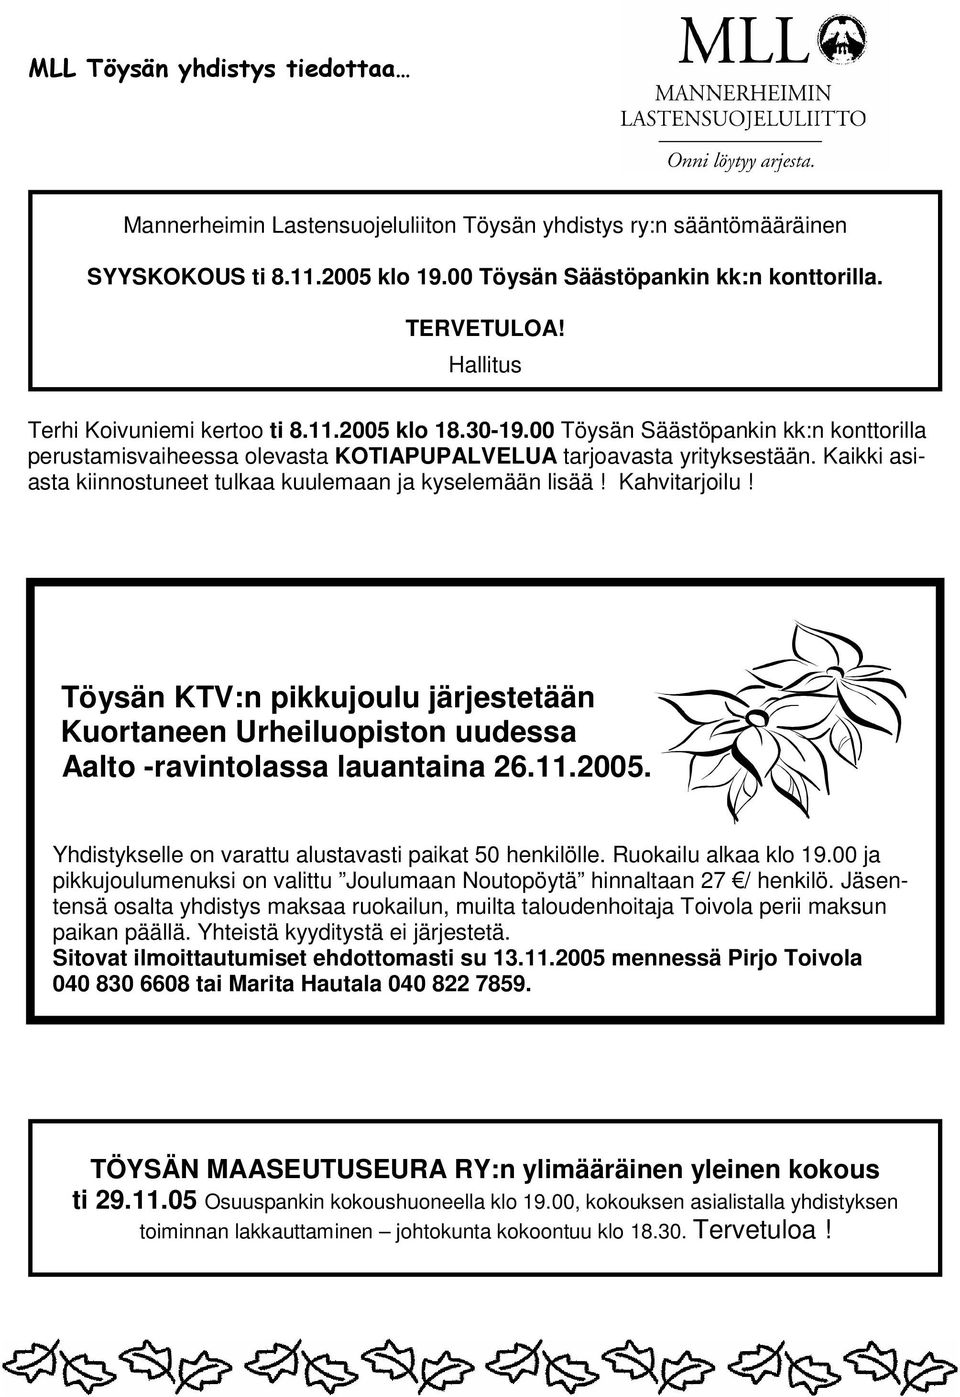 Kaikki asiasta kiinnostuneet tulkaa kuulemaan ja kyselemään lisää! Kahvitarjoilu! Töysän KTV:n pikkujoulu järjestetään Kuortaneen Urheiluopiston uudessa Aalto -ravintolassa lauantaina 26.11.2005.